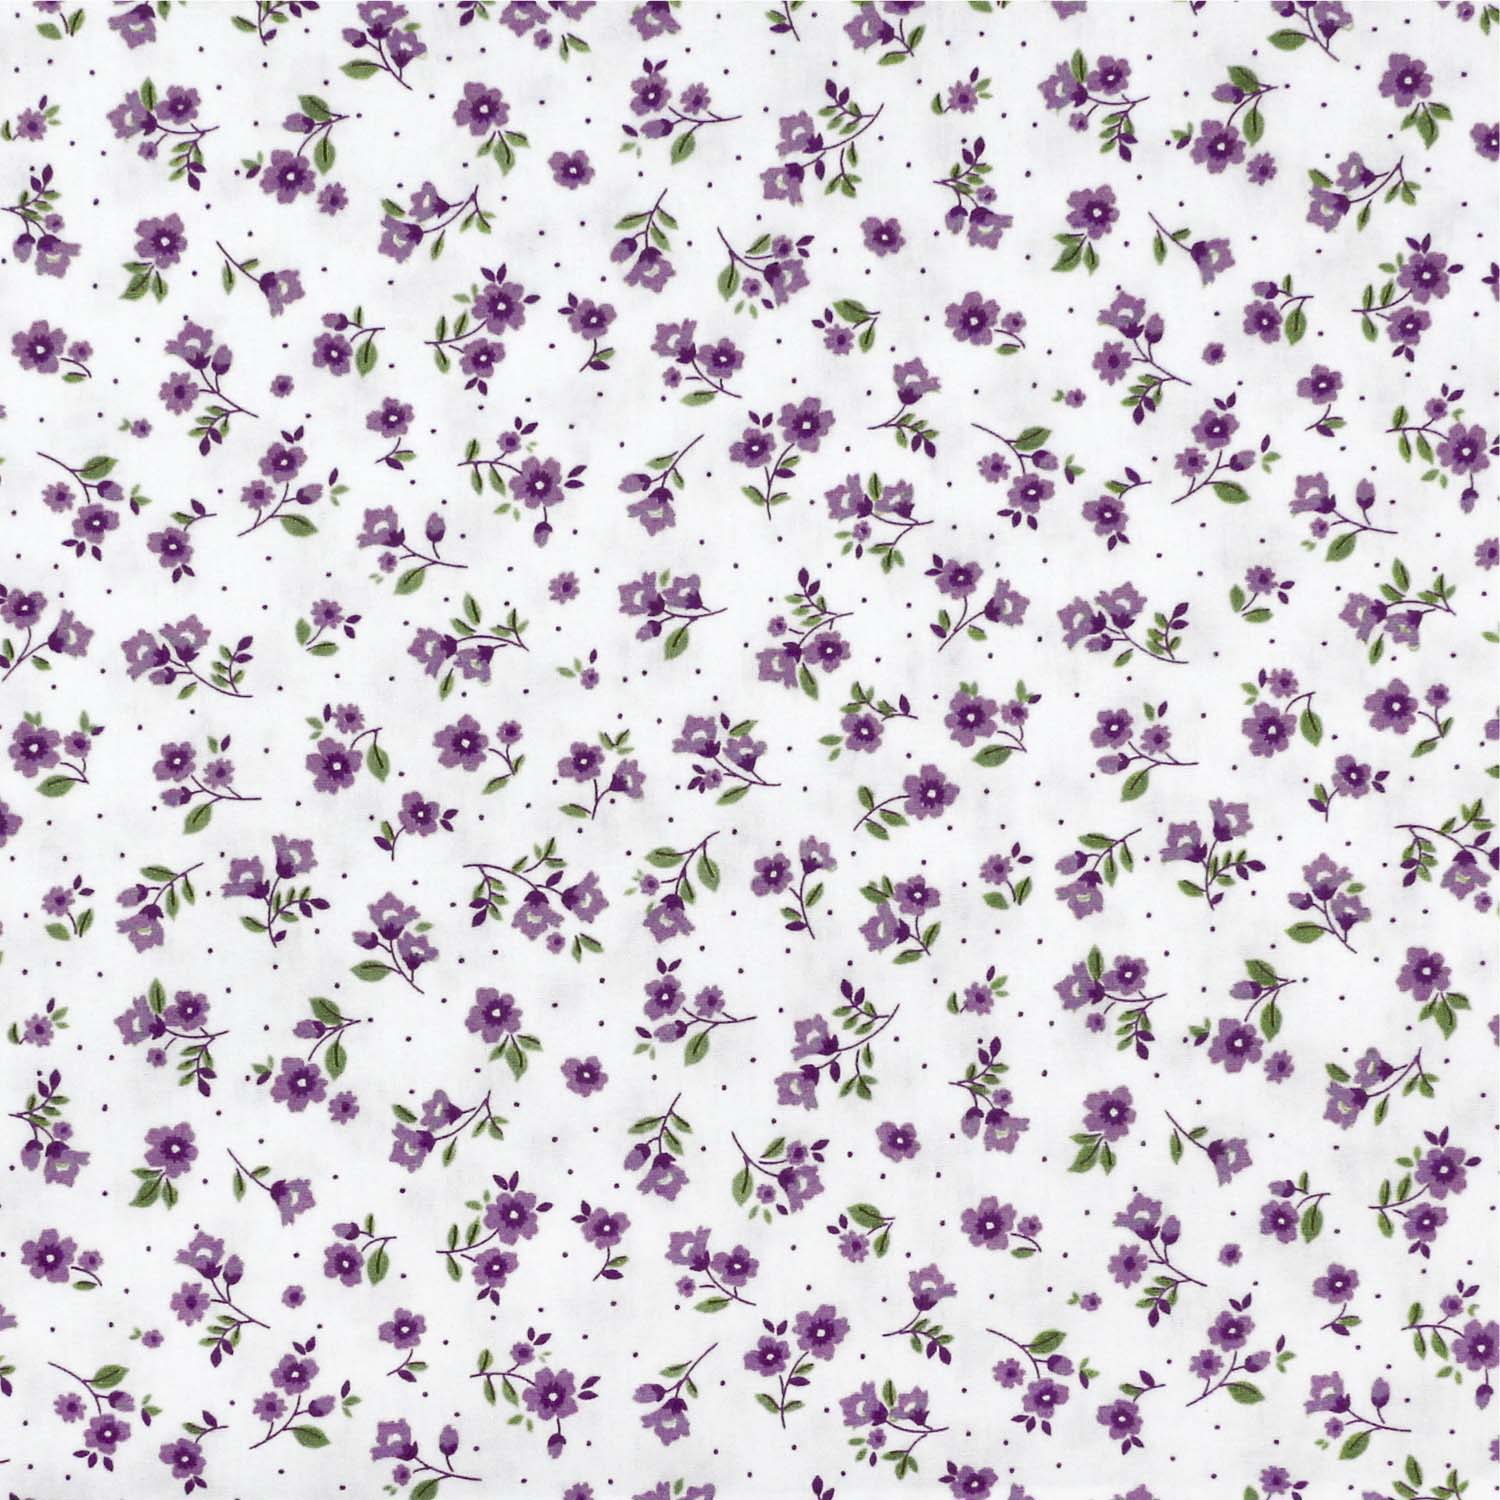 tecido-tricoline-flores-pequenas-lilas-fundo-branco-della-aviamentos-10957